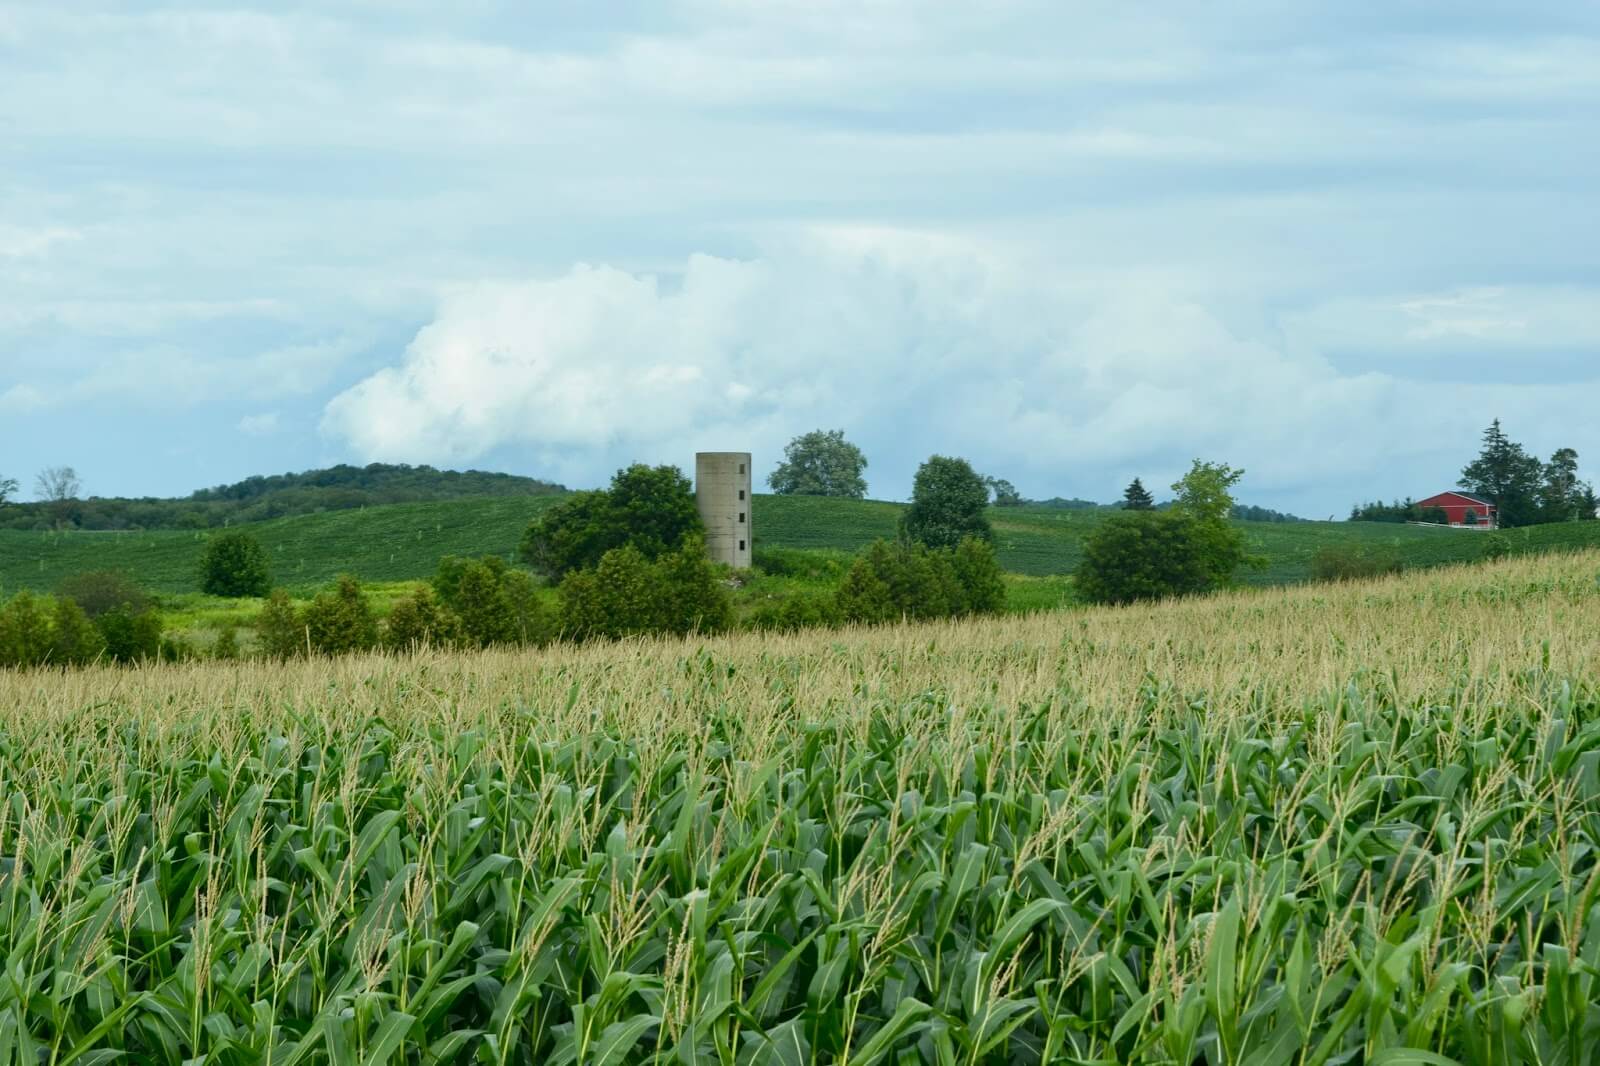 Stone silo in background of cornfield 